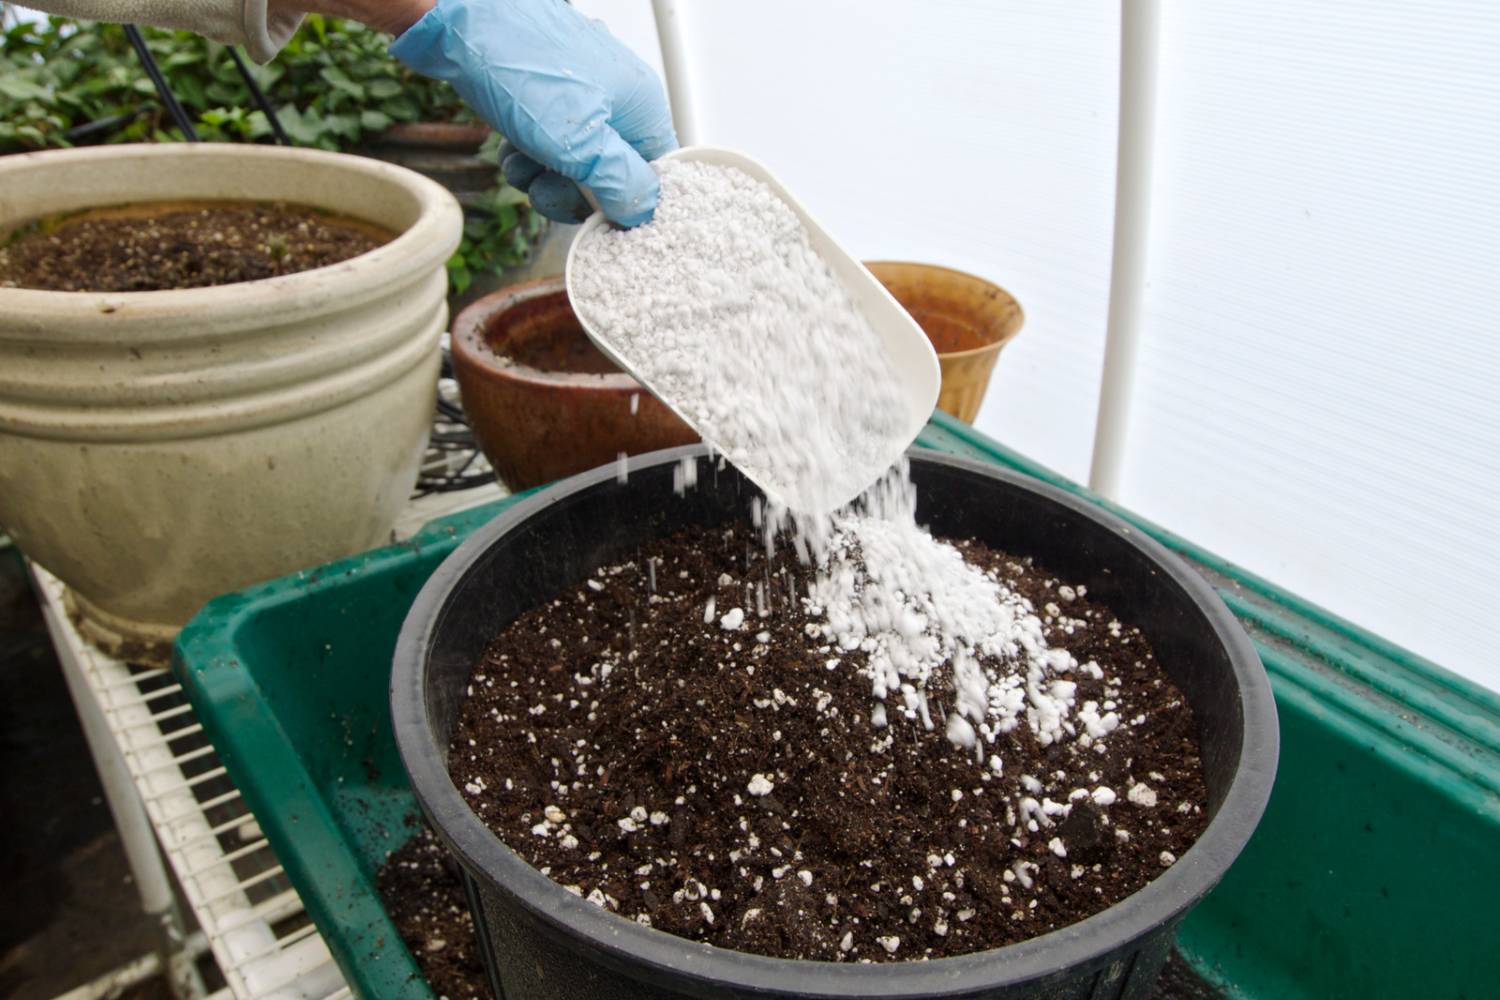 Cash Crop & Pay Dirt Potting Soil, Plant Nutrients